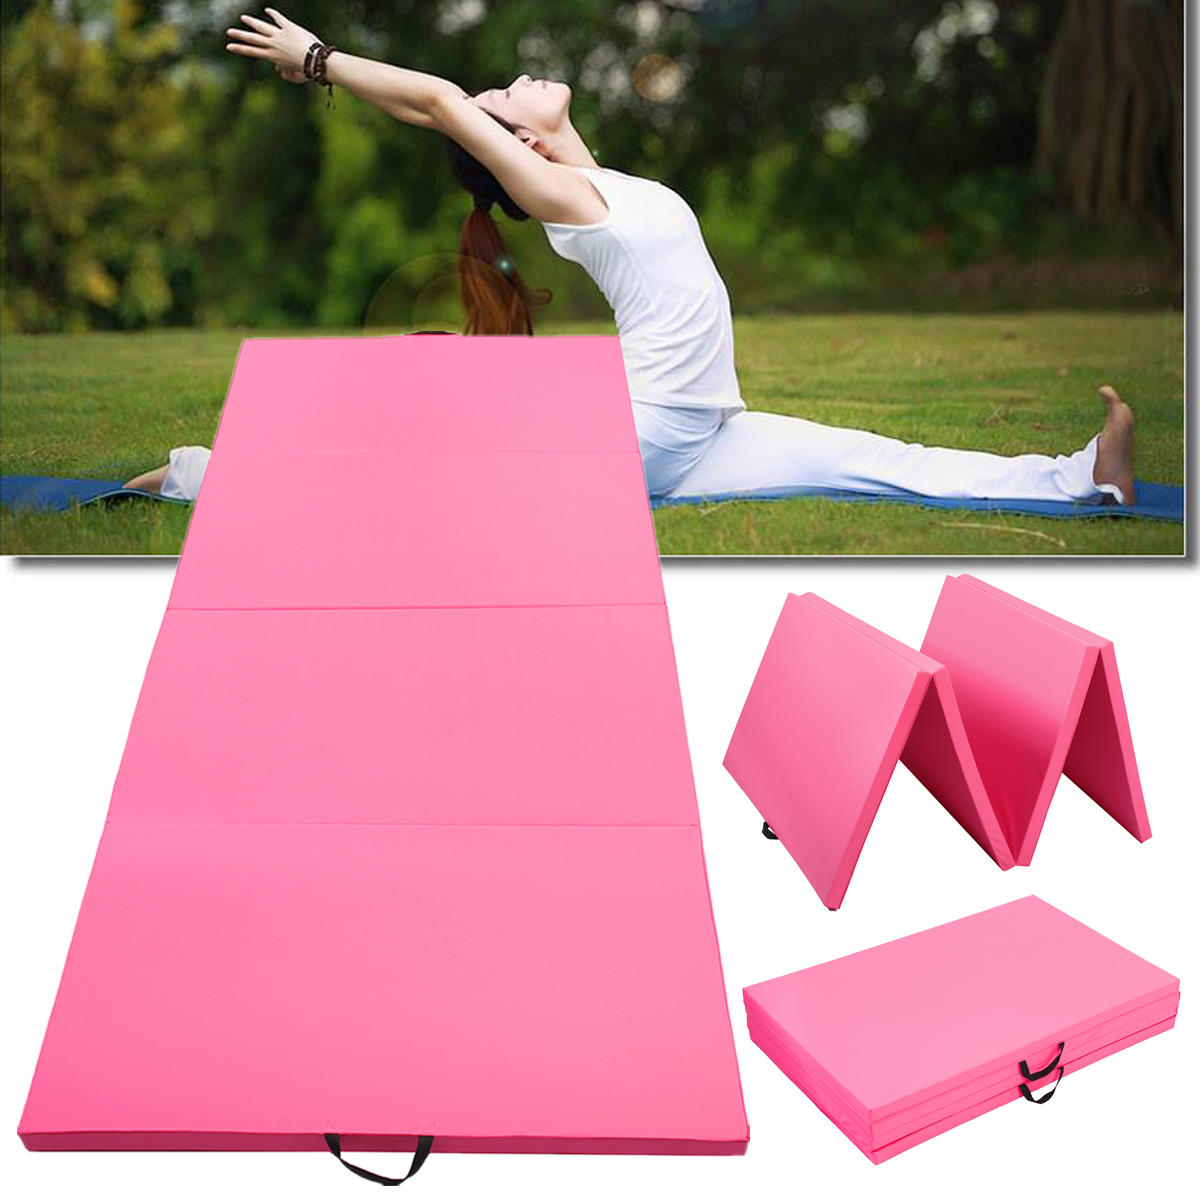 300х120х5 см 4-слойный супербольшой гимнастический коврик для йоги и упражнений в спортзале розового цвета